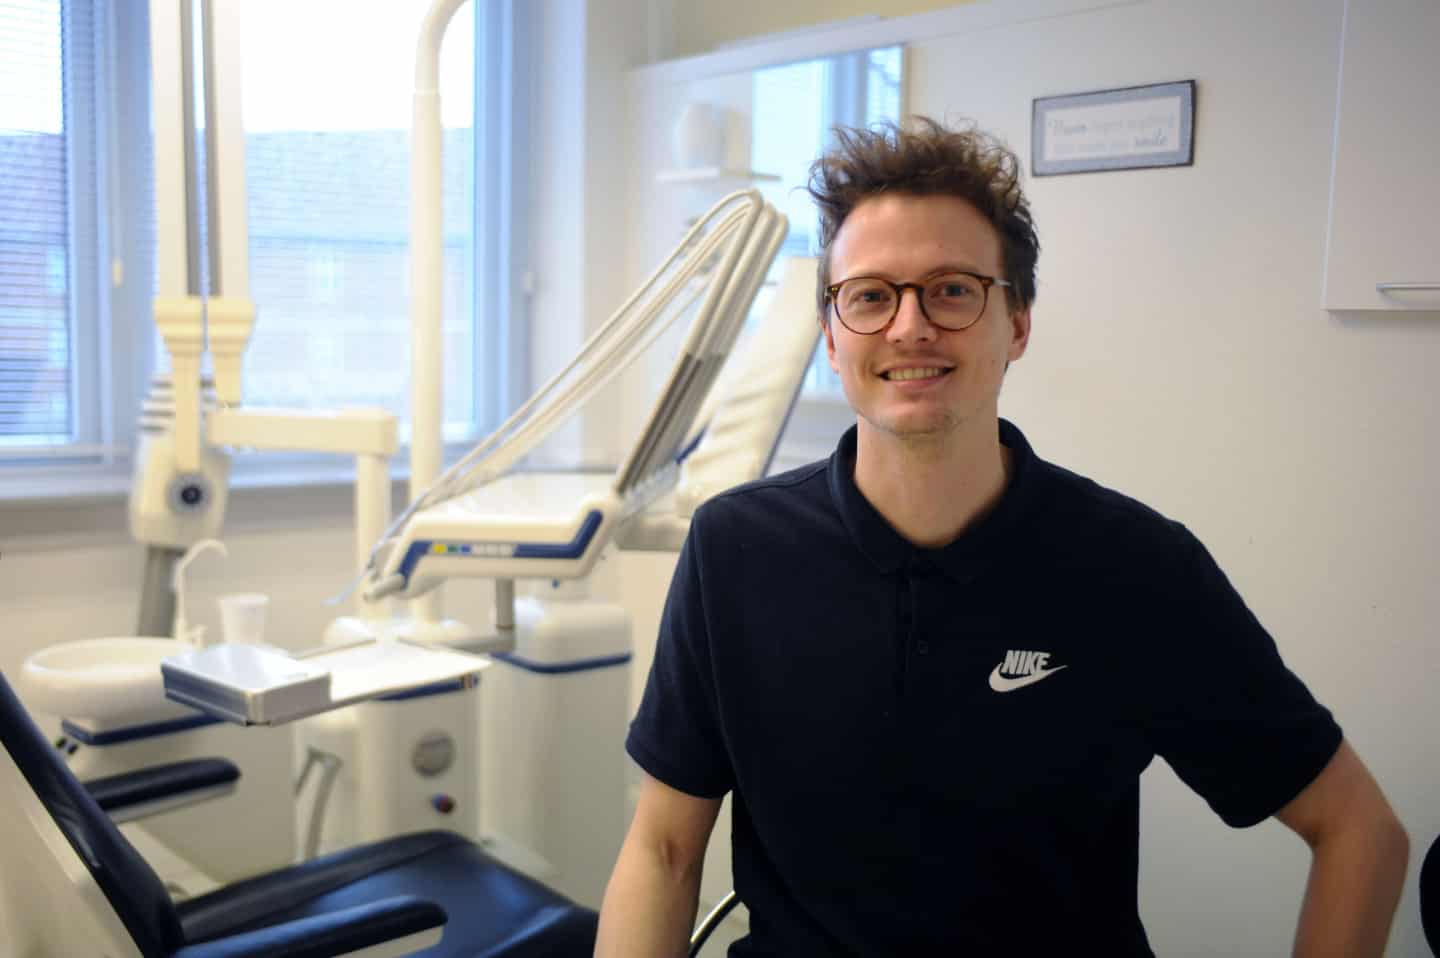 Tandlæge har en stolene i klinik ugeavisen.dk